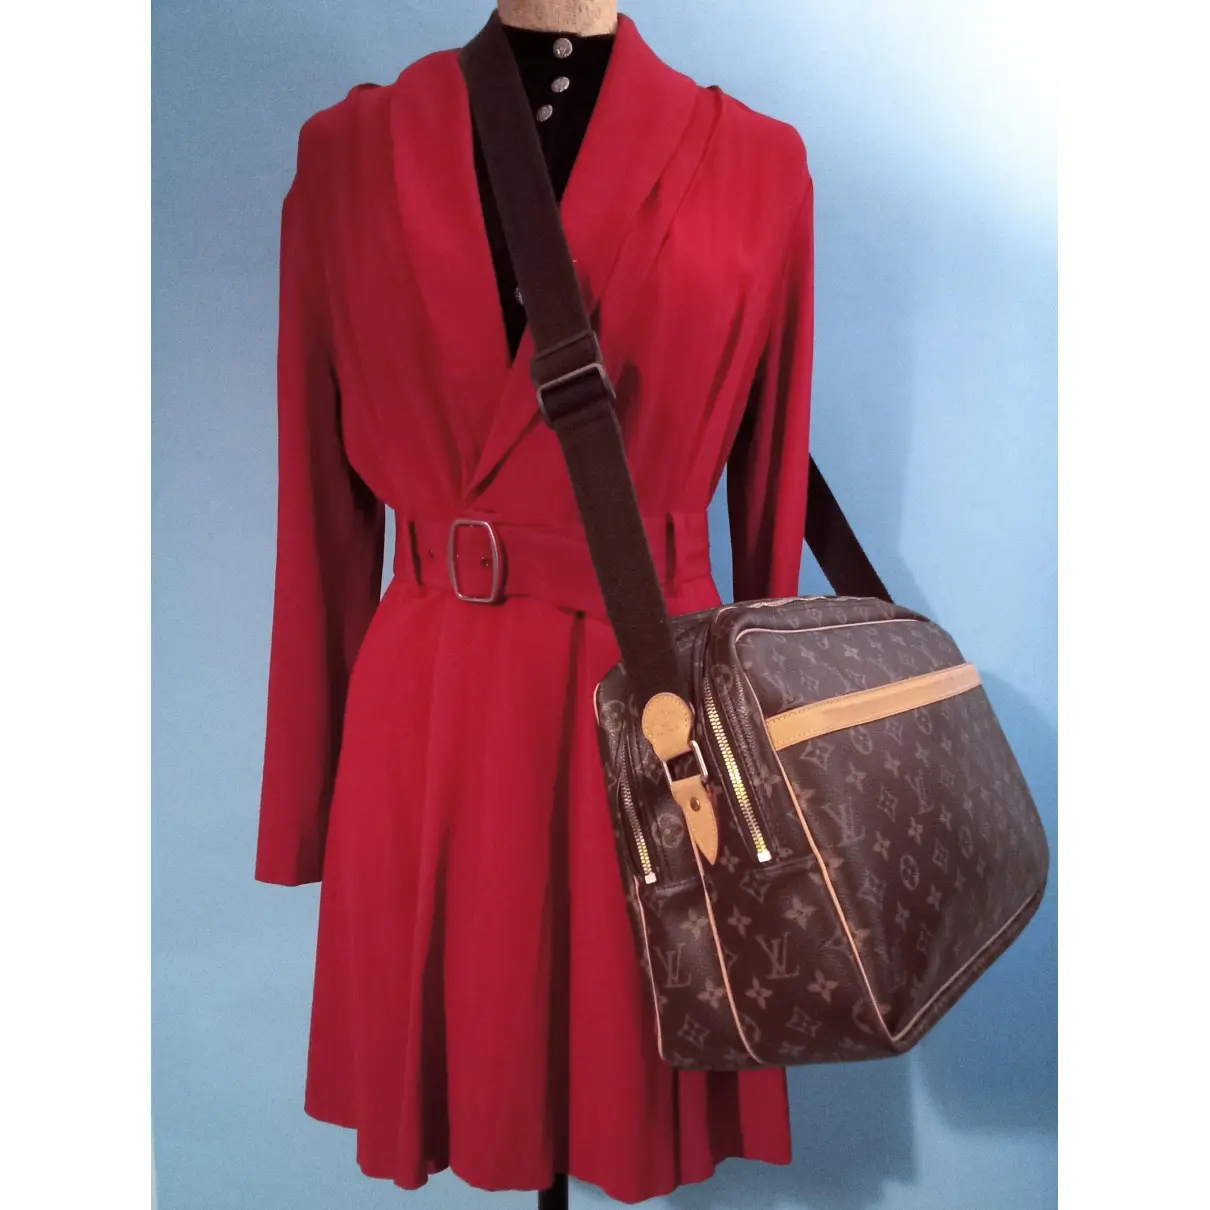 Louis Vuitton Reporter leather handbag for sale - Vintage